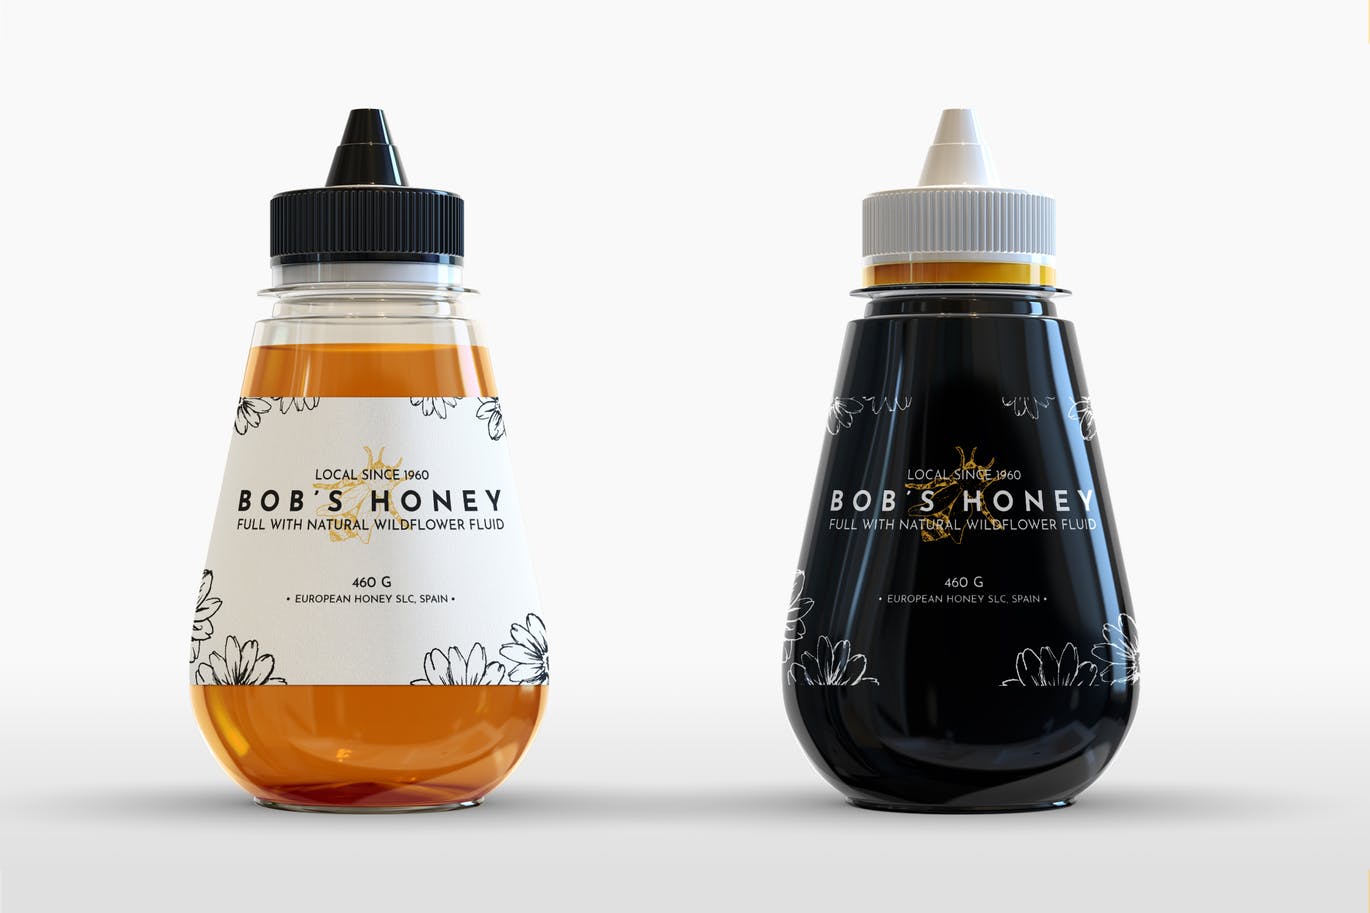 Download 20 Super Realistic Honey Jar Psd Mockups Decolore Net